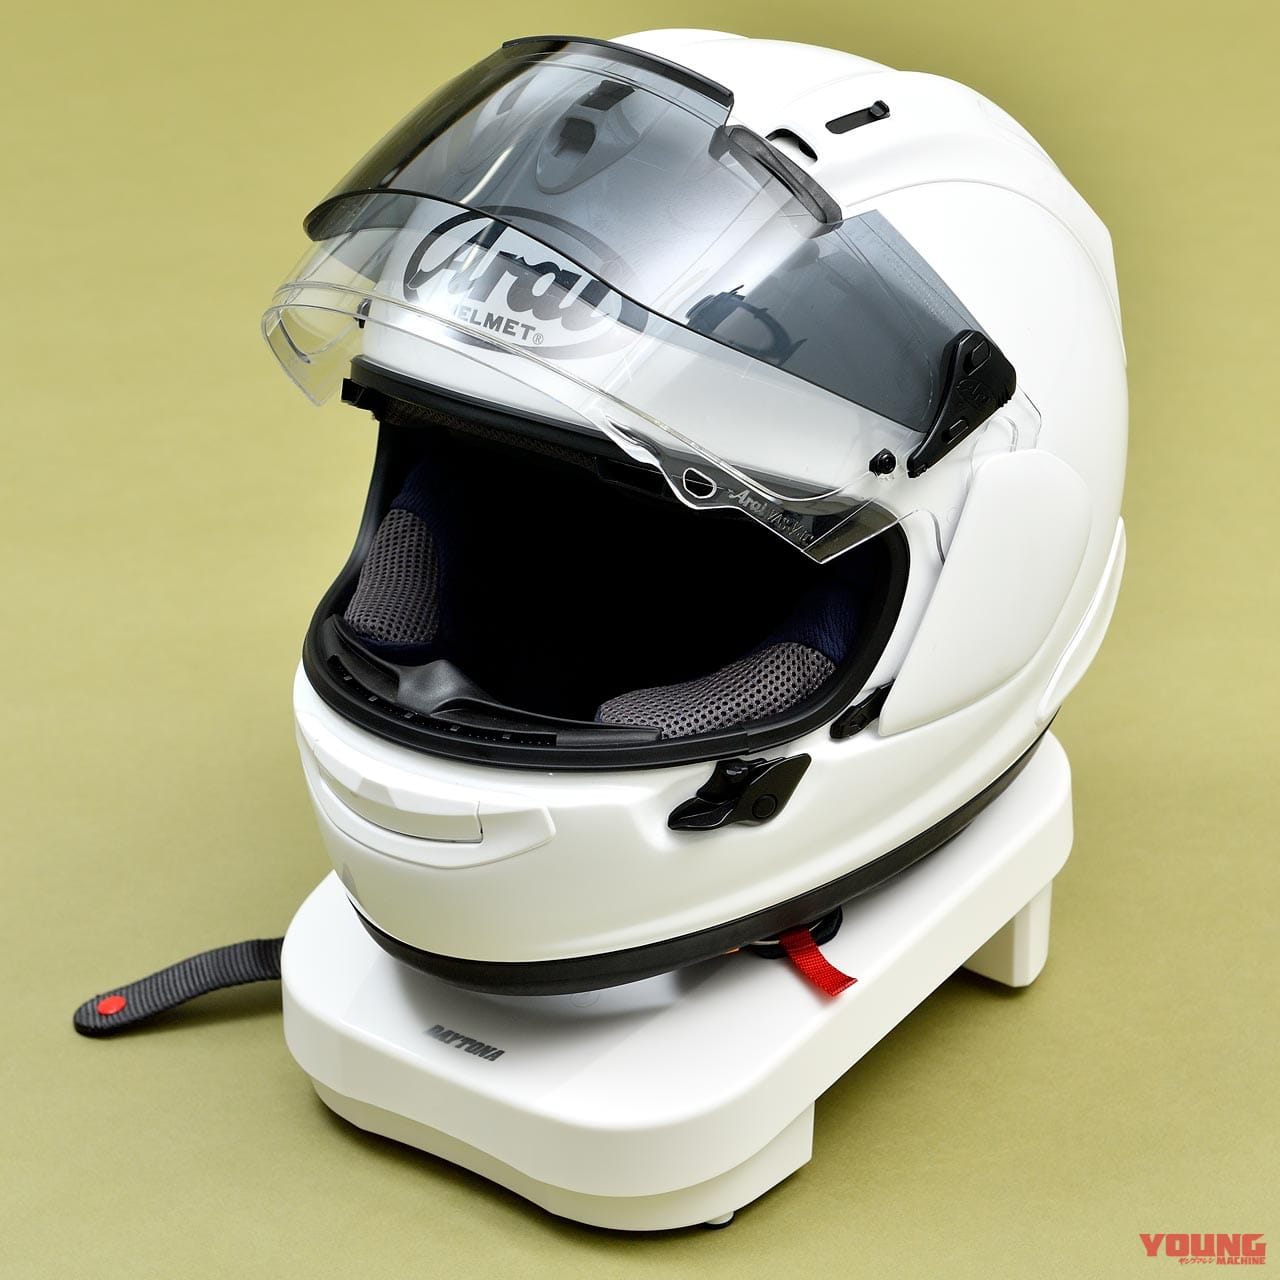 コスパ良好のヘルメット乾燥機 リメット 試用インプレッション コスパ良好 消臭効果もアリ Webヤングマシン 新車バイクニュース